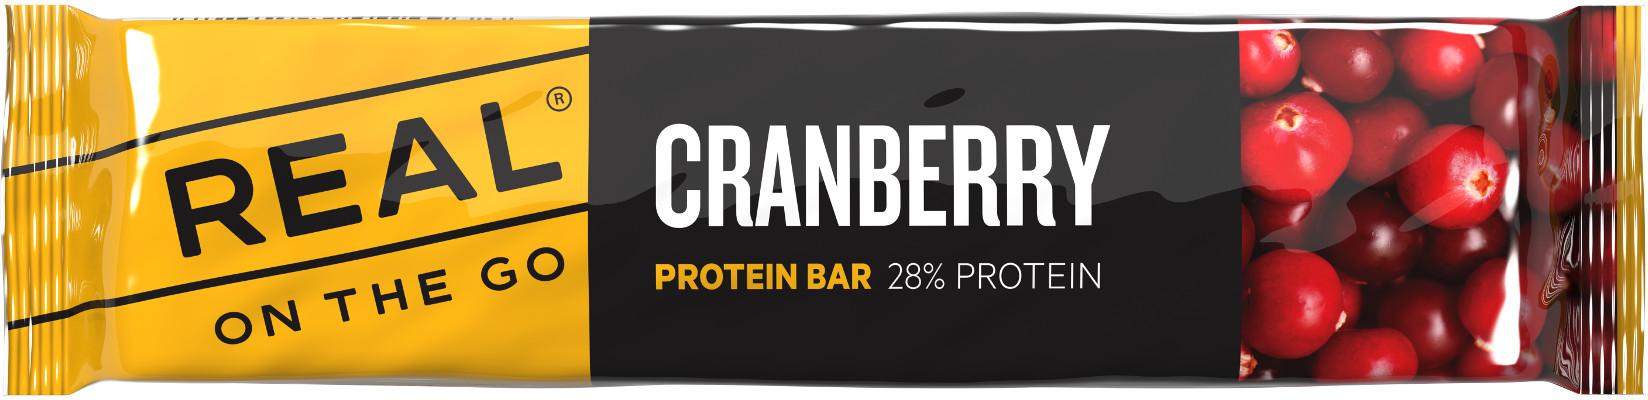 OTG Protein bar Cranberry